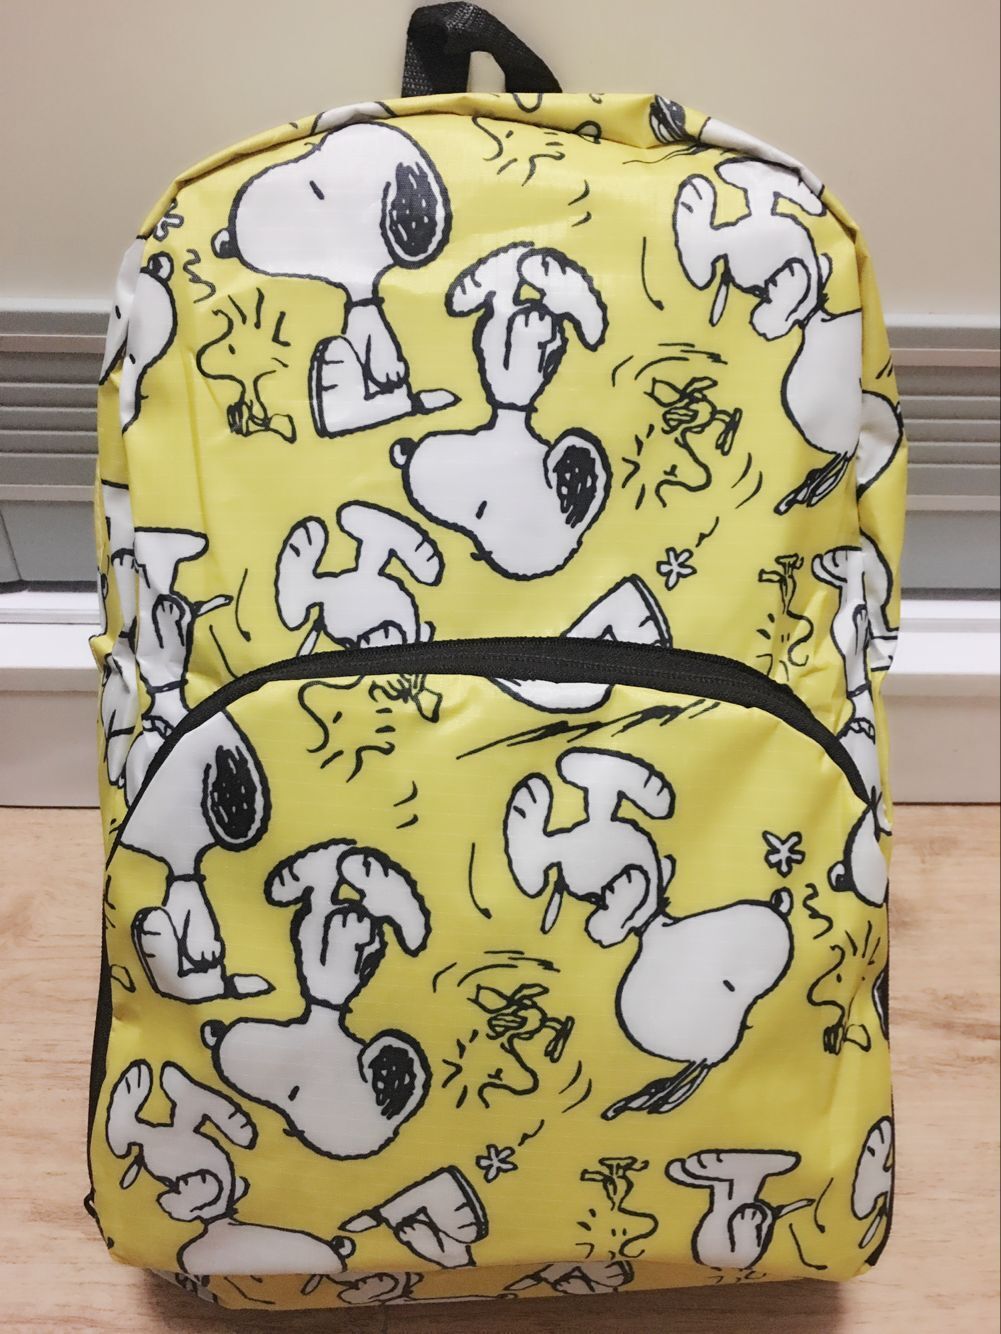 Snoopy backpack cartoon waterproof foldable storage ..